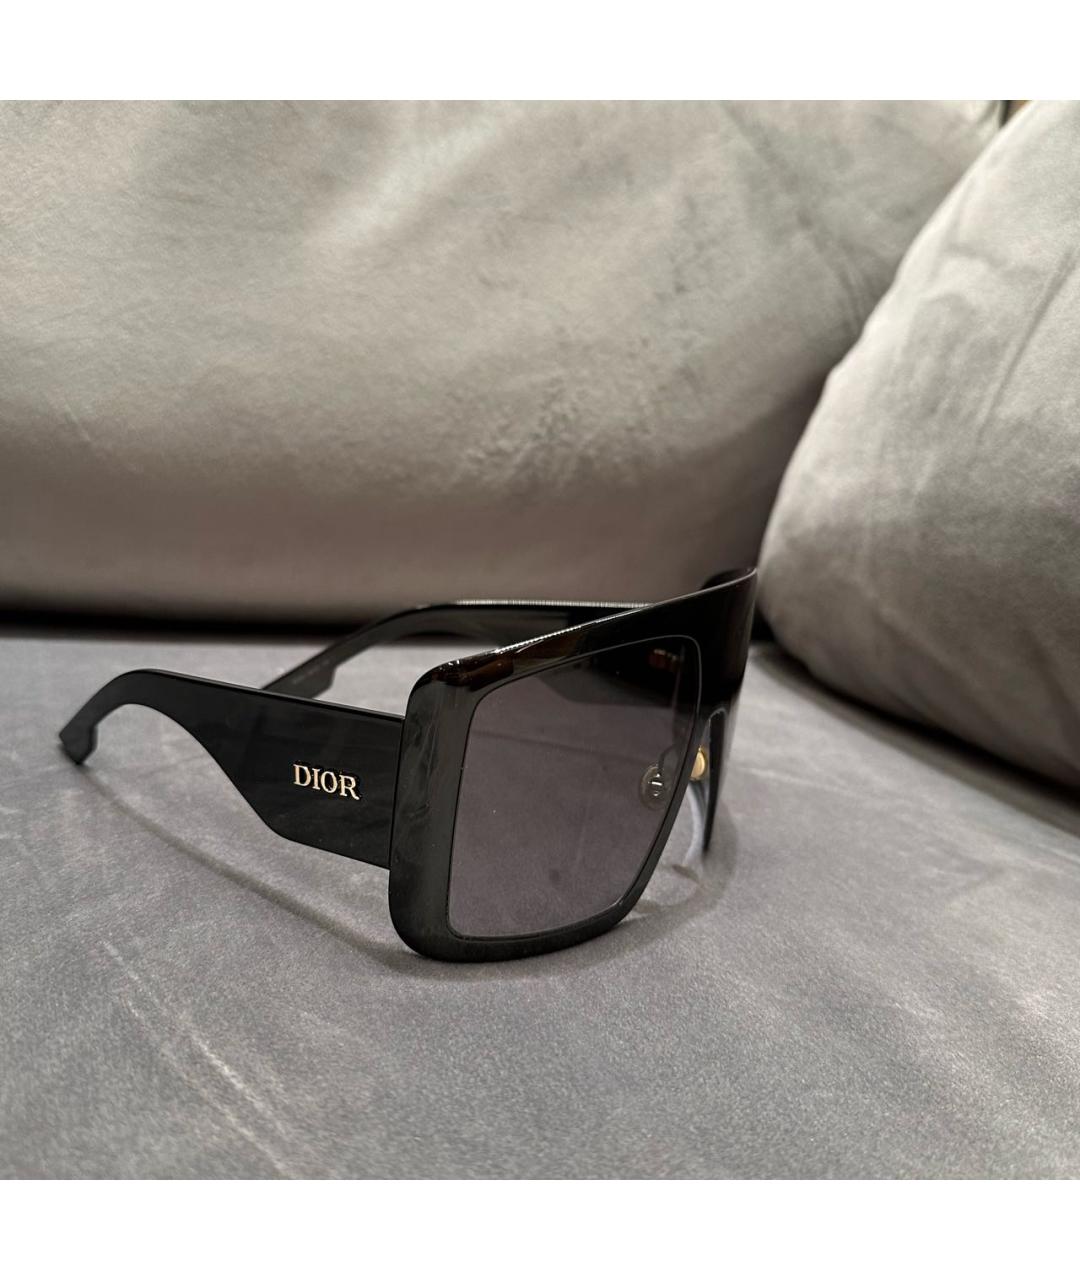 CHRISTIAN DIOR Черные пластиковые солнцезащитные очки, фото 2